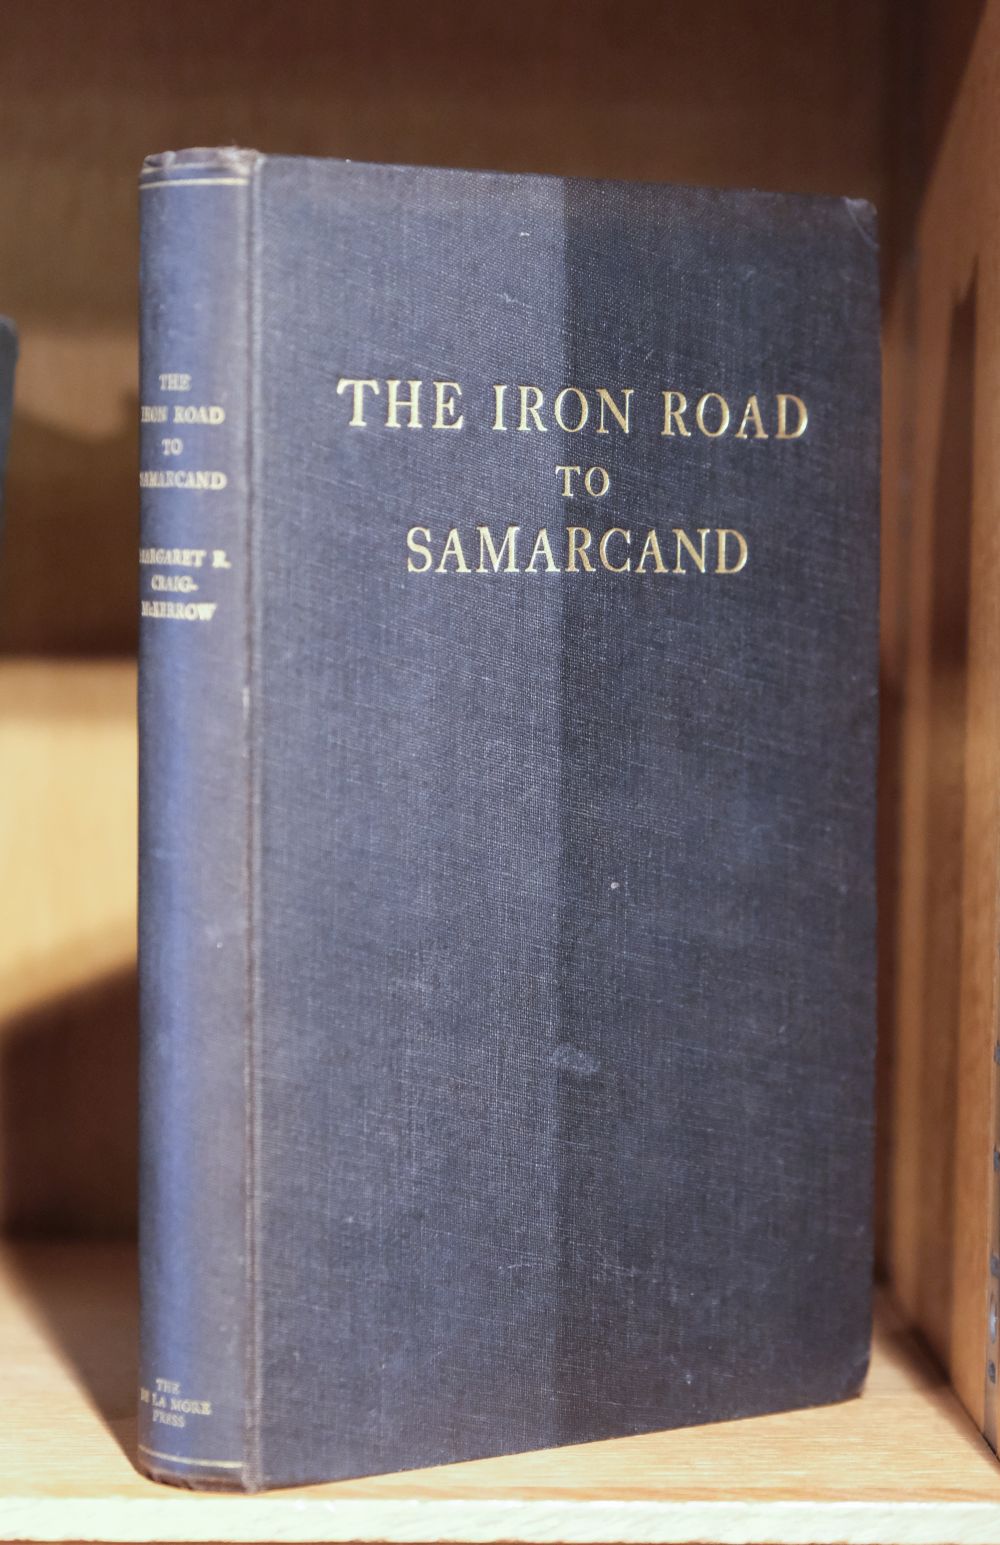 Craig-McKerrow (Margaret Reibold). The Iron Road to Samarcand, 1st edition